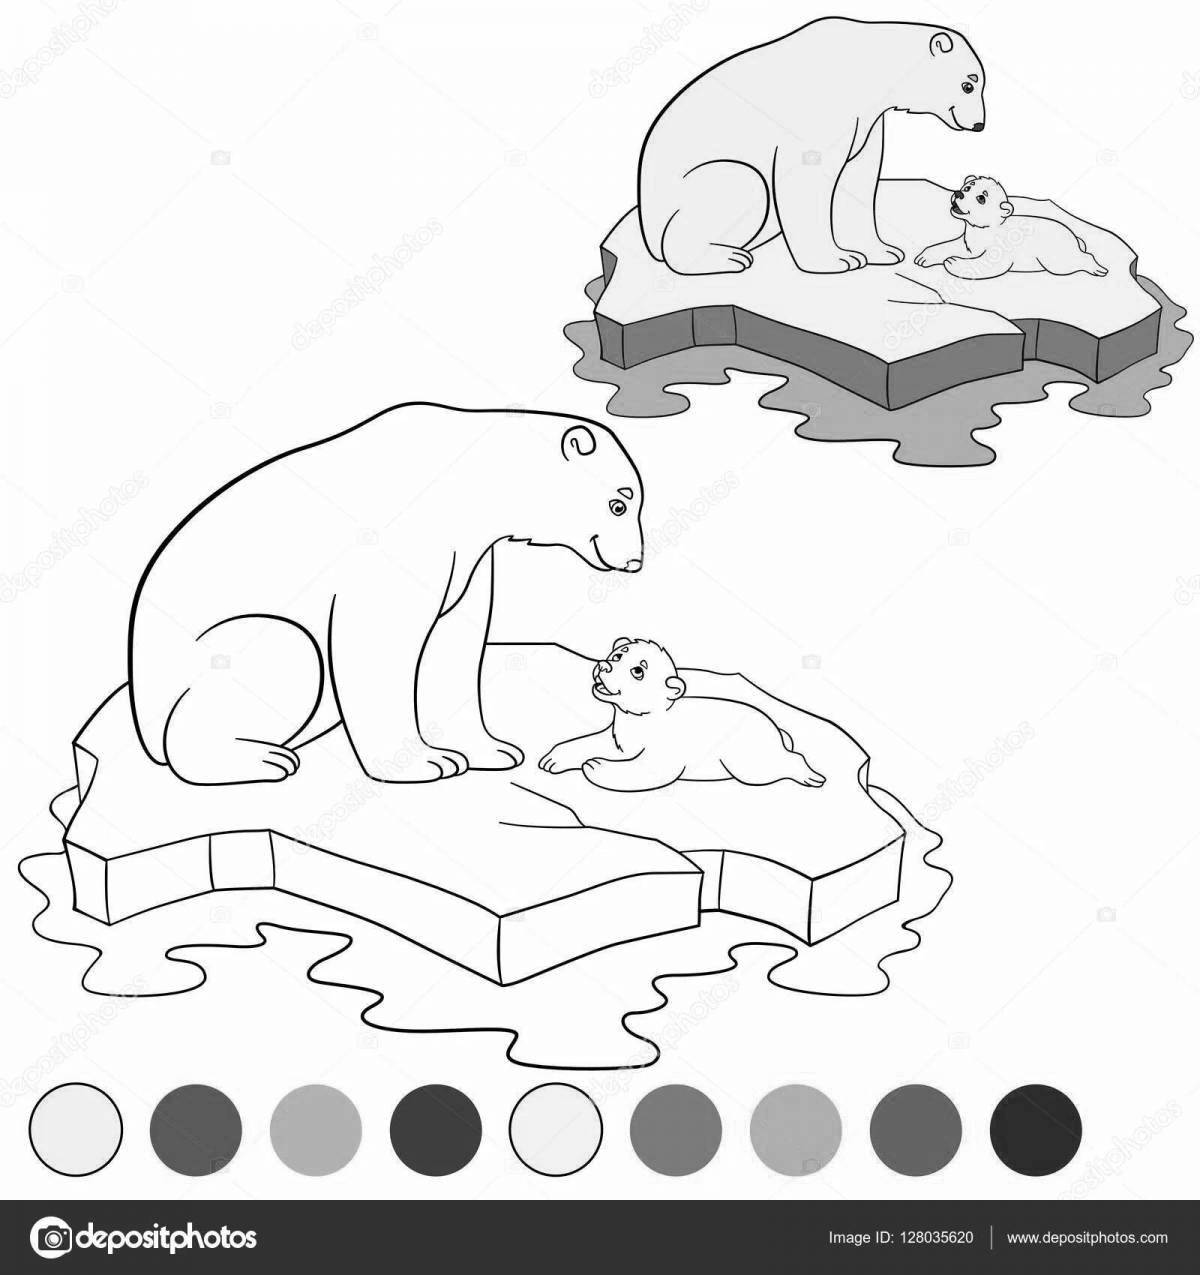 Delightful polar bear coloring book